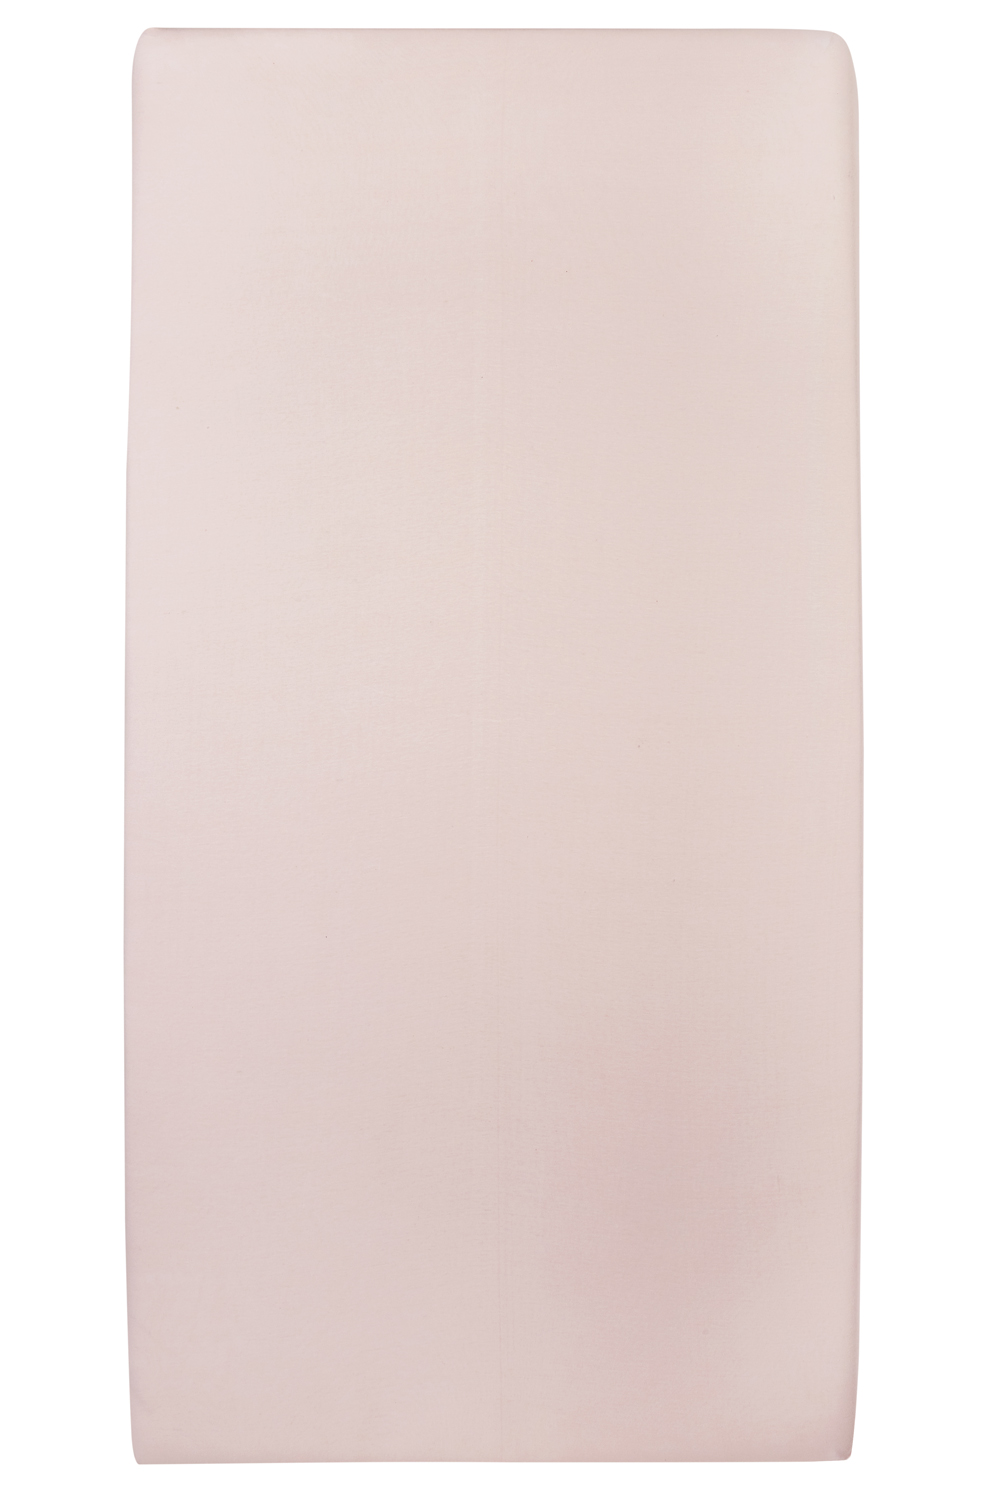 Spannbettlaken Laufgittermatratze Uni - light pink - 75x95cm